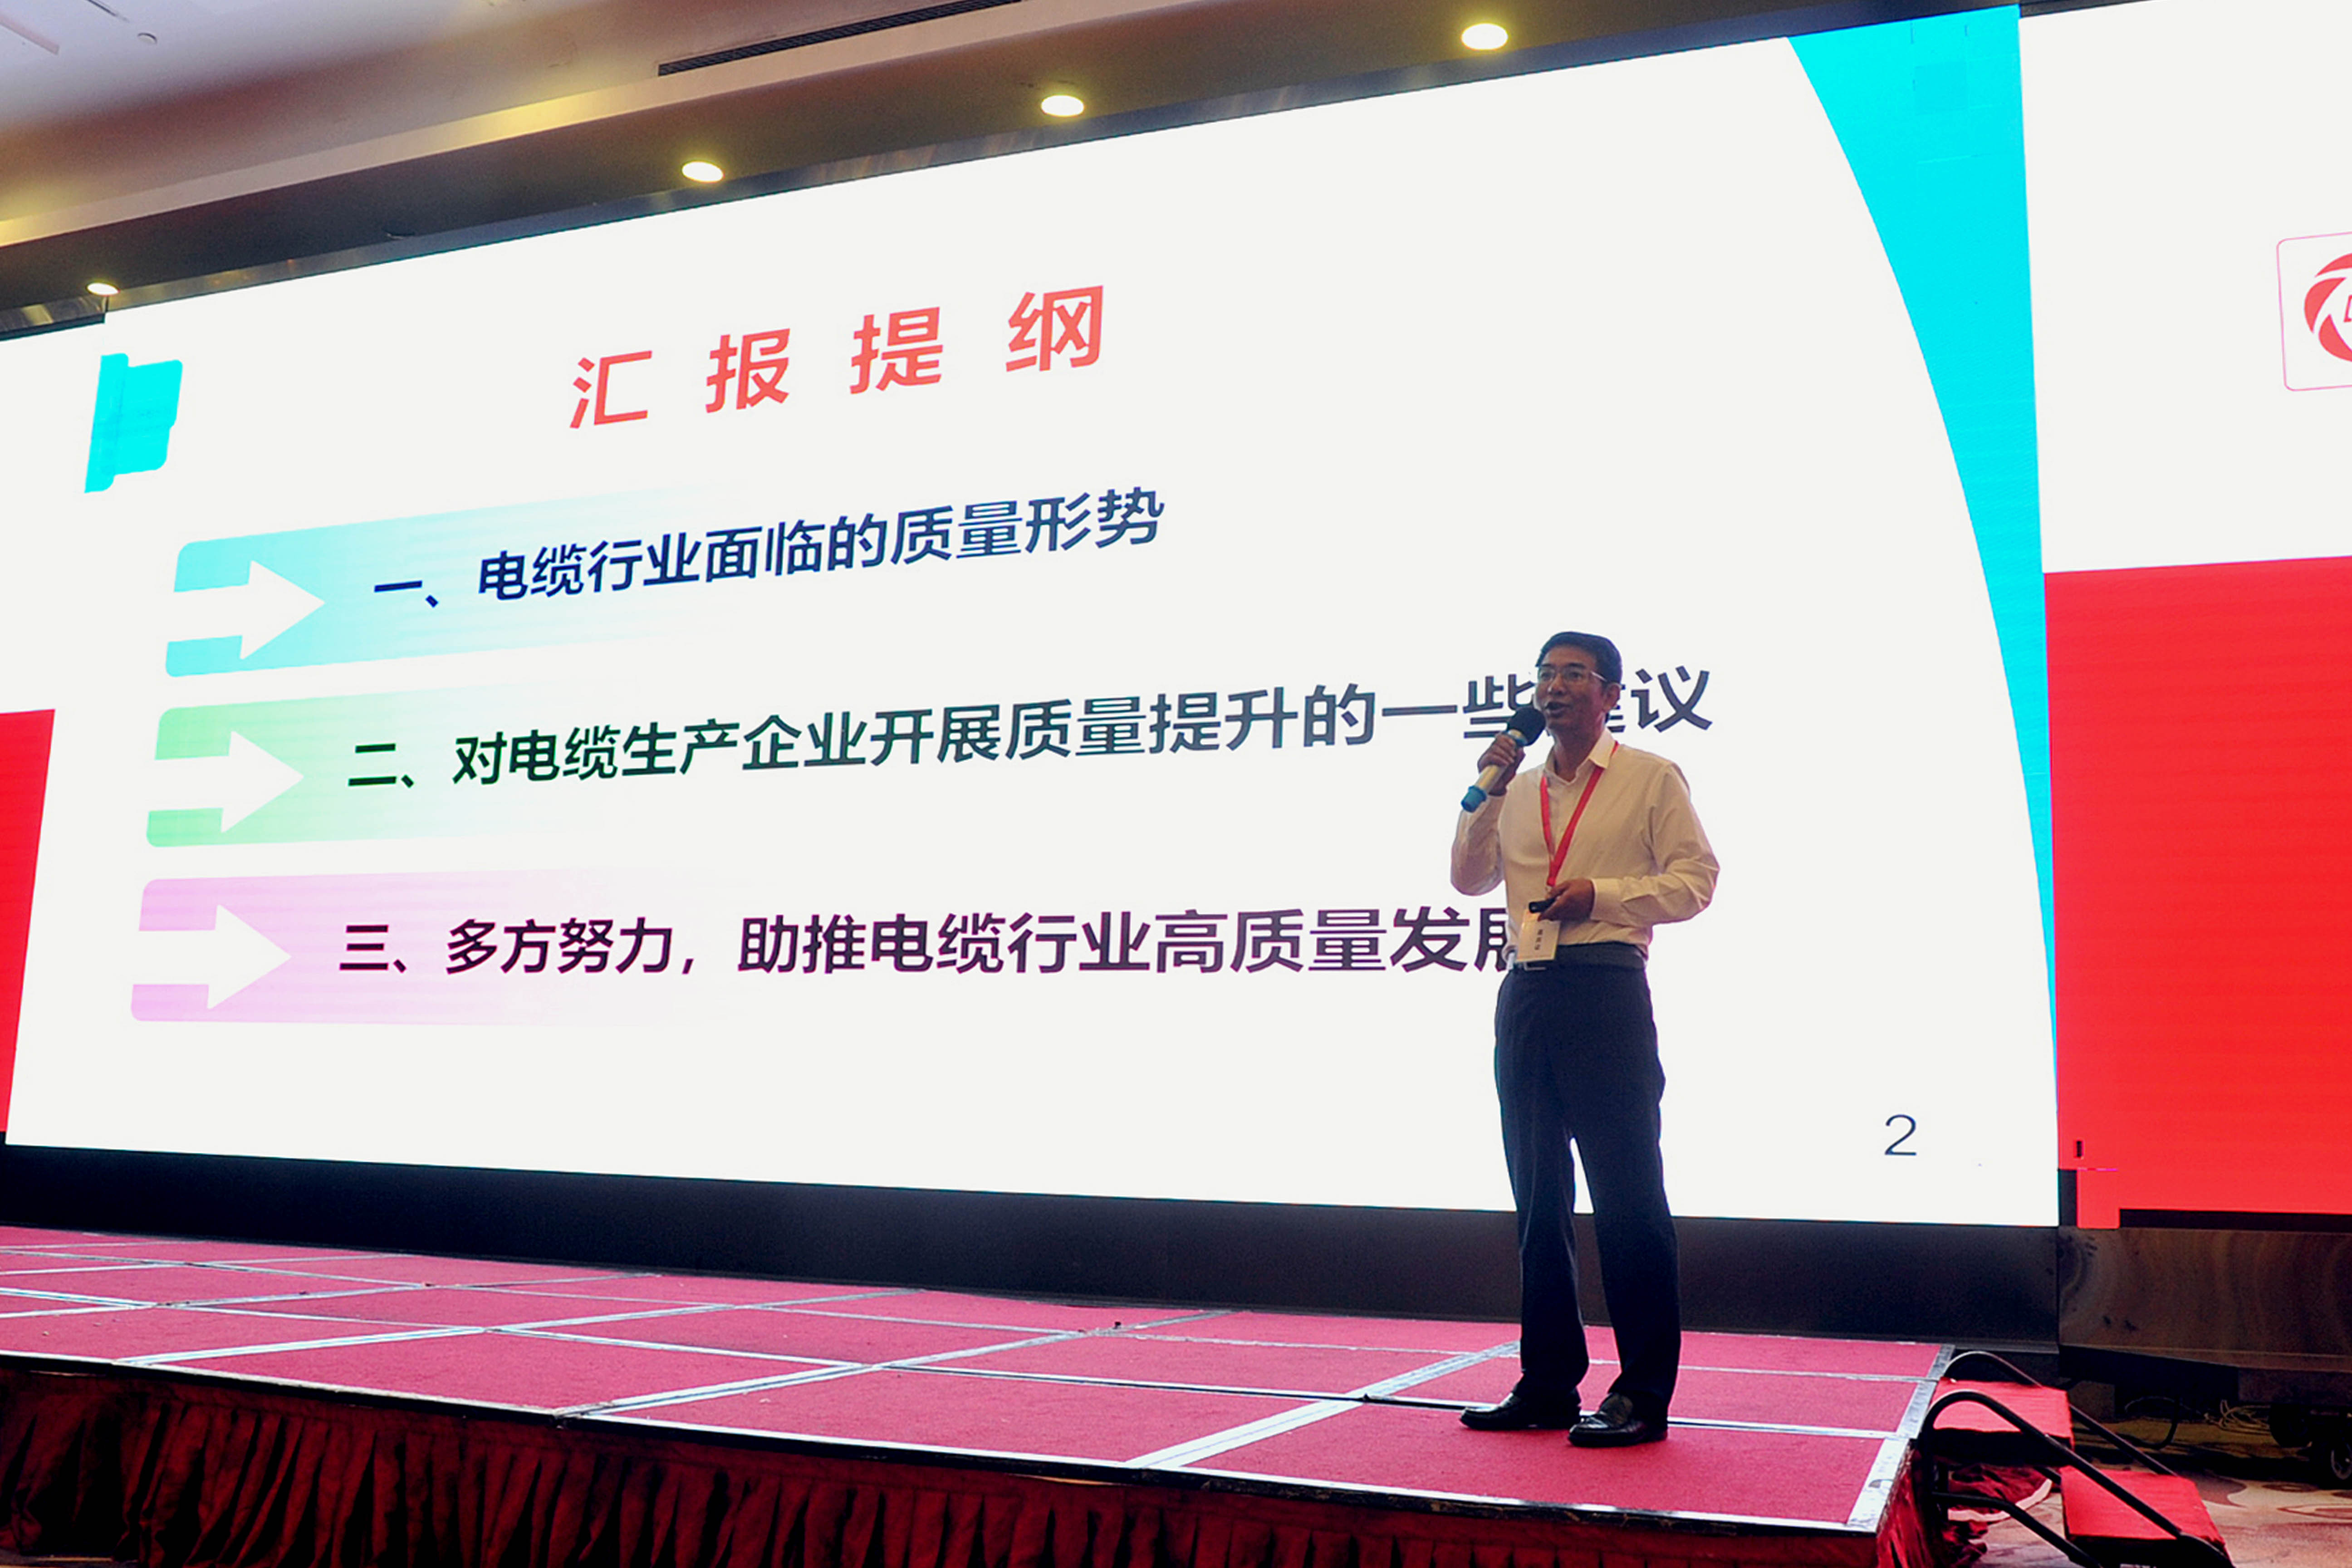 pg电子电缆副总经理朱洪祥作为特邀专家出席中国电线电缆行业大会并作专题报告